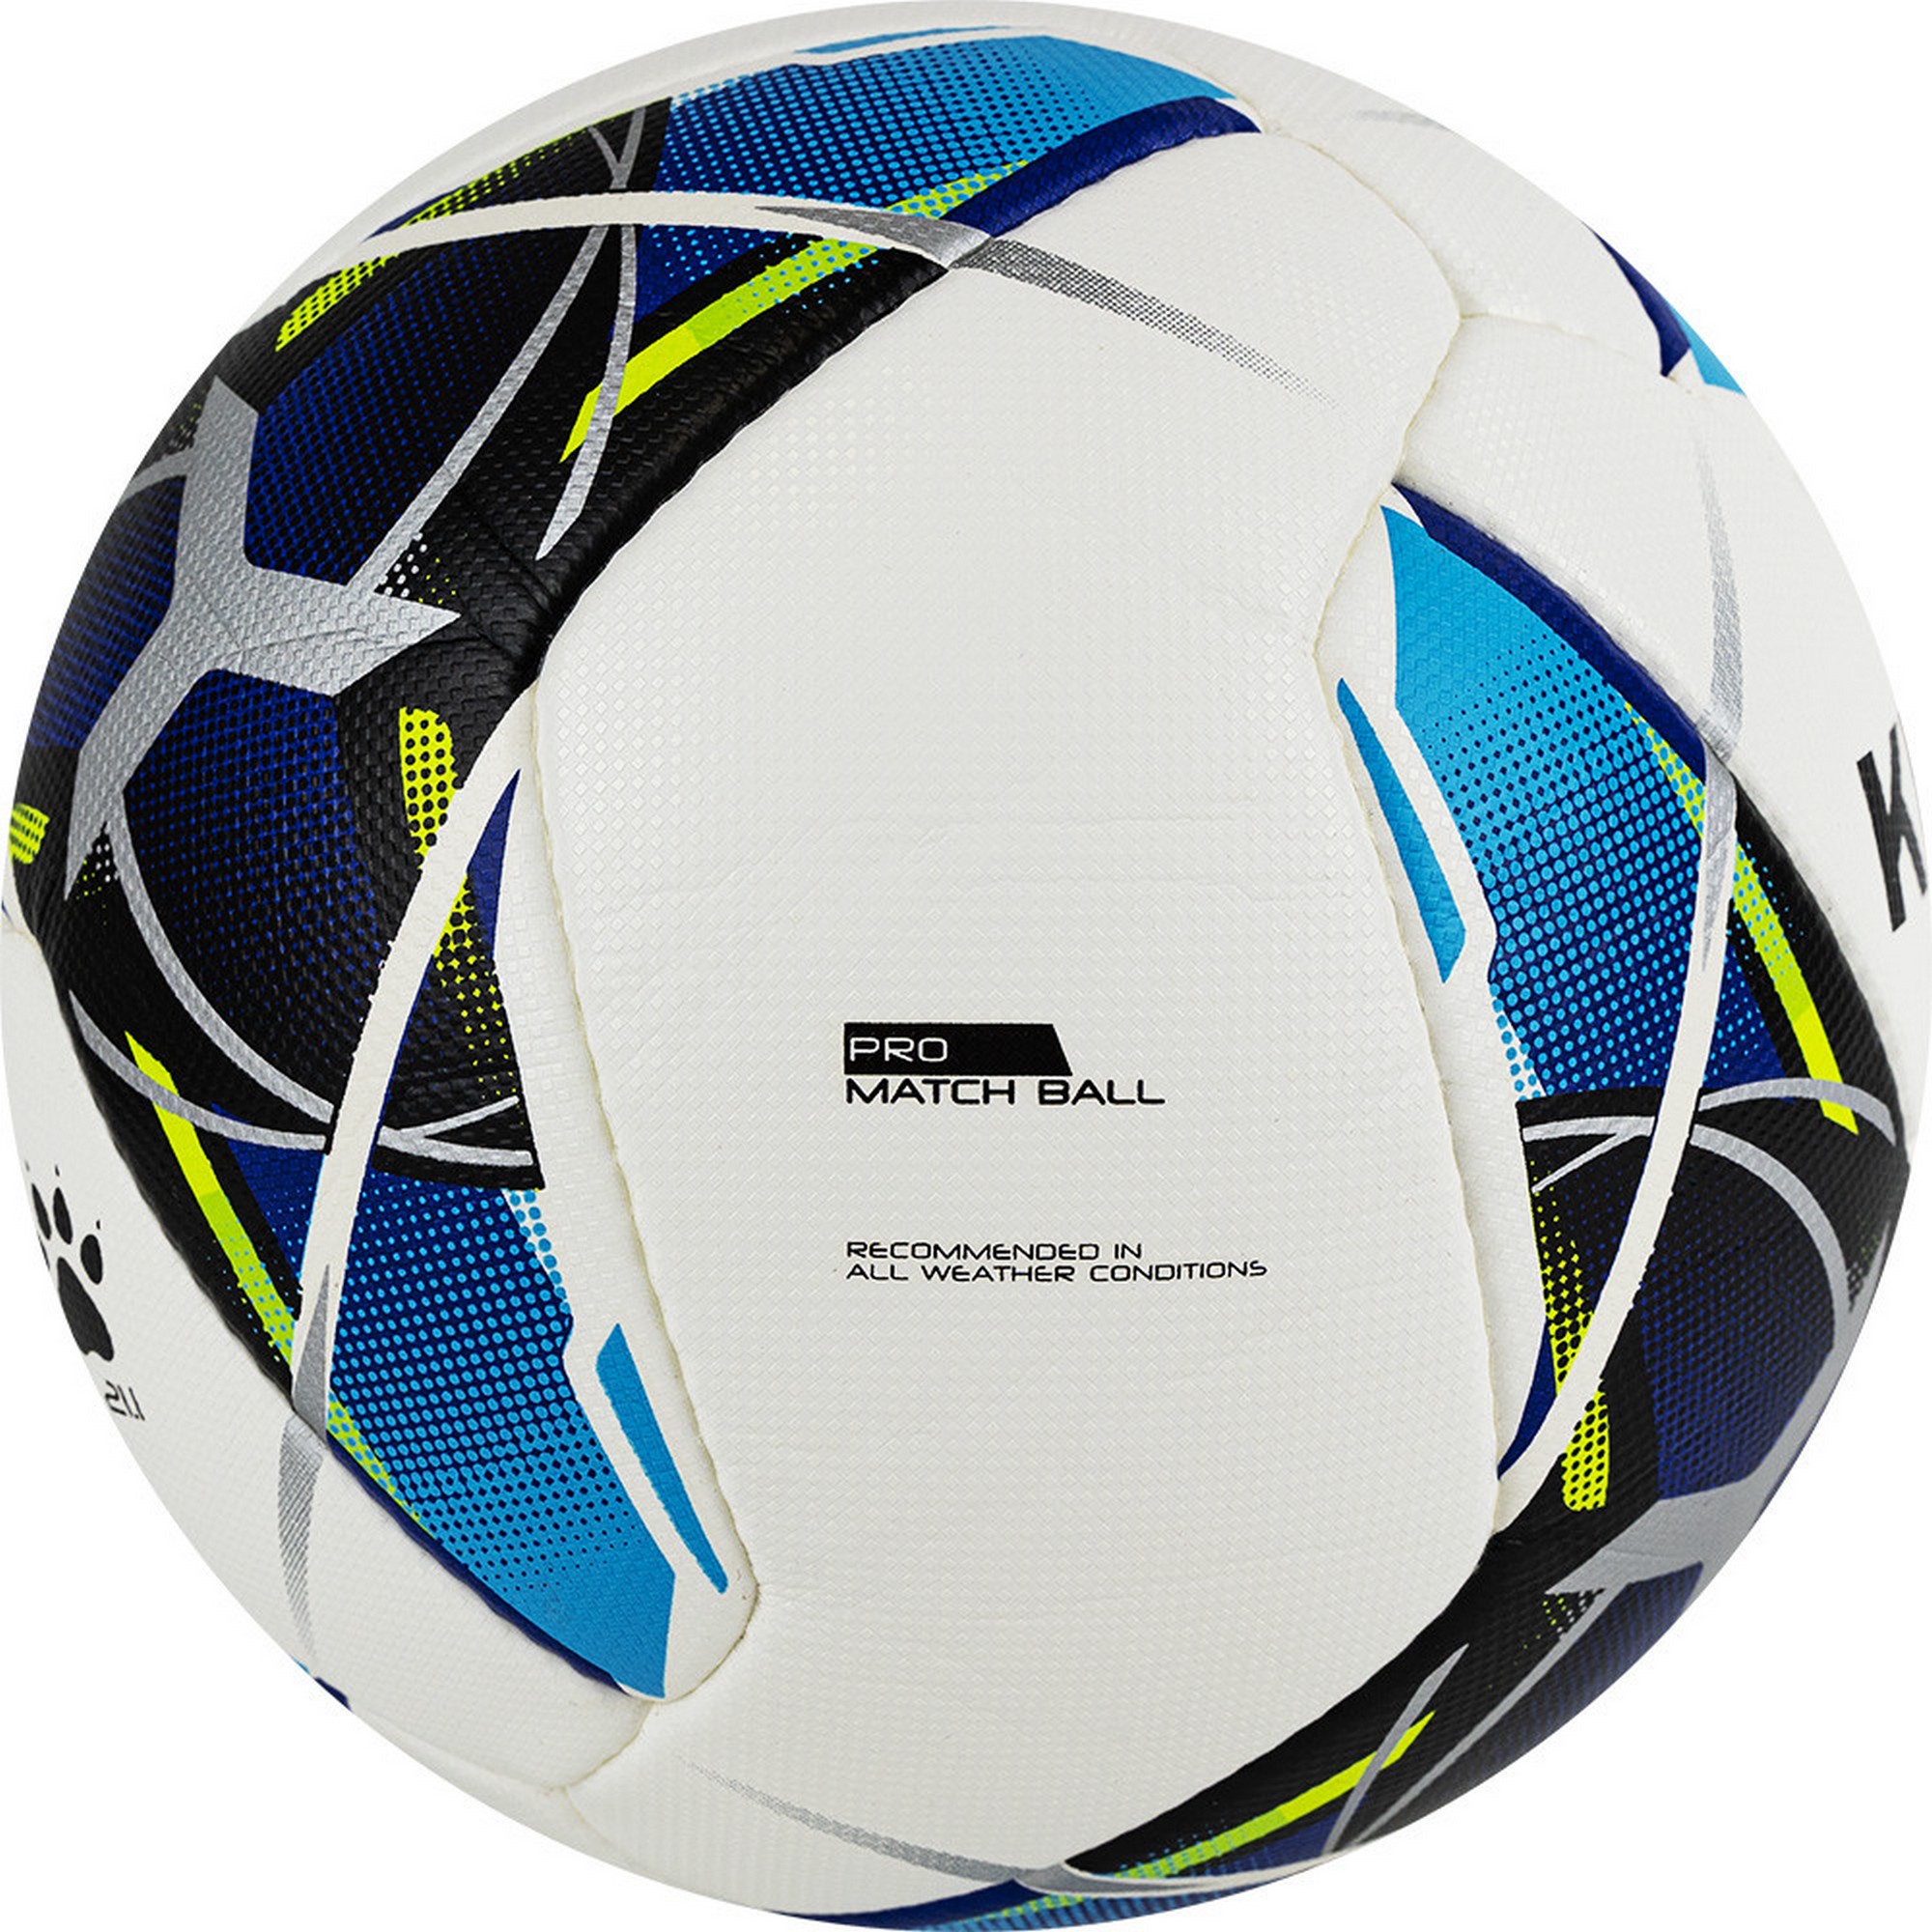 Мяч футбольный Kelme Vortex 21.1, 8101QU5003-113 р.4 2000_2000